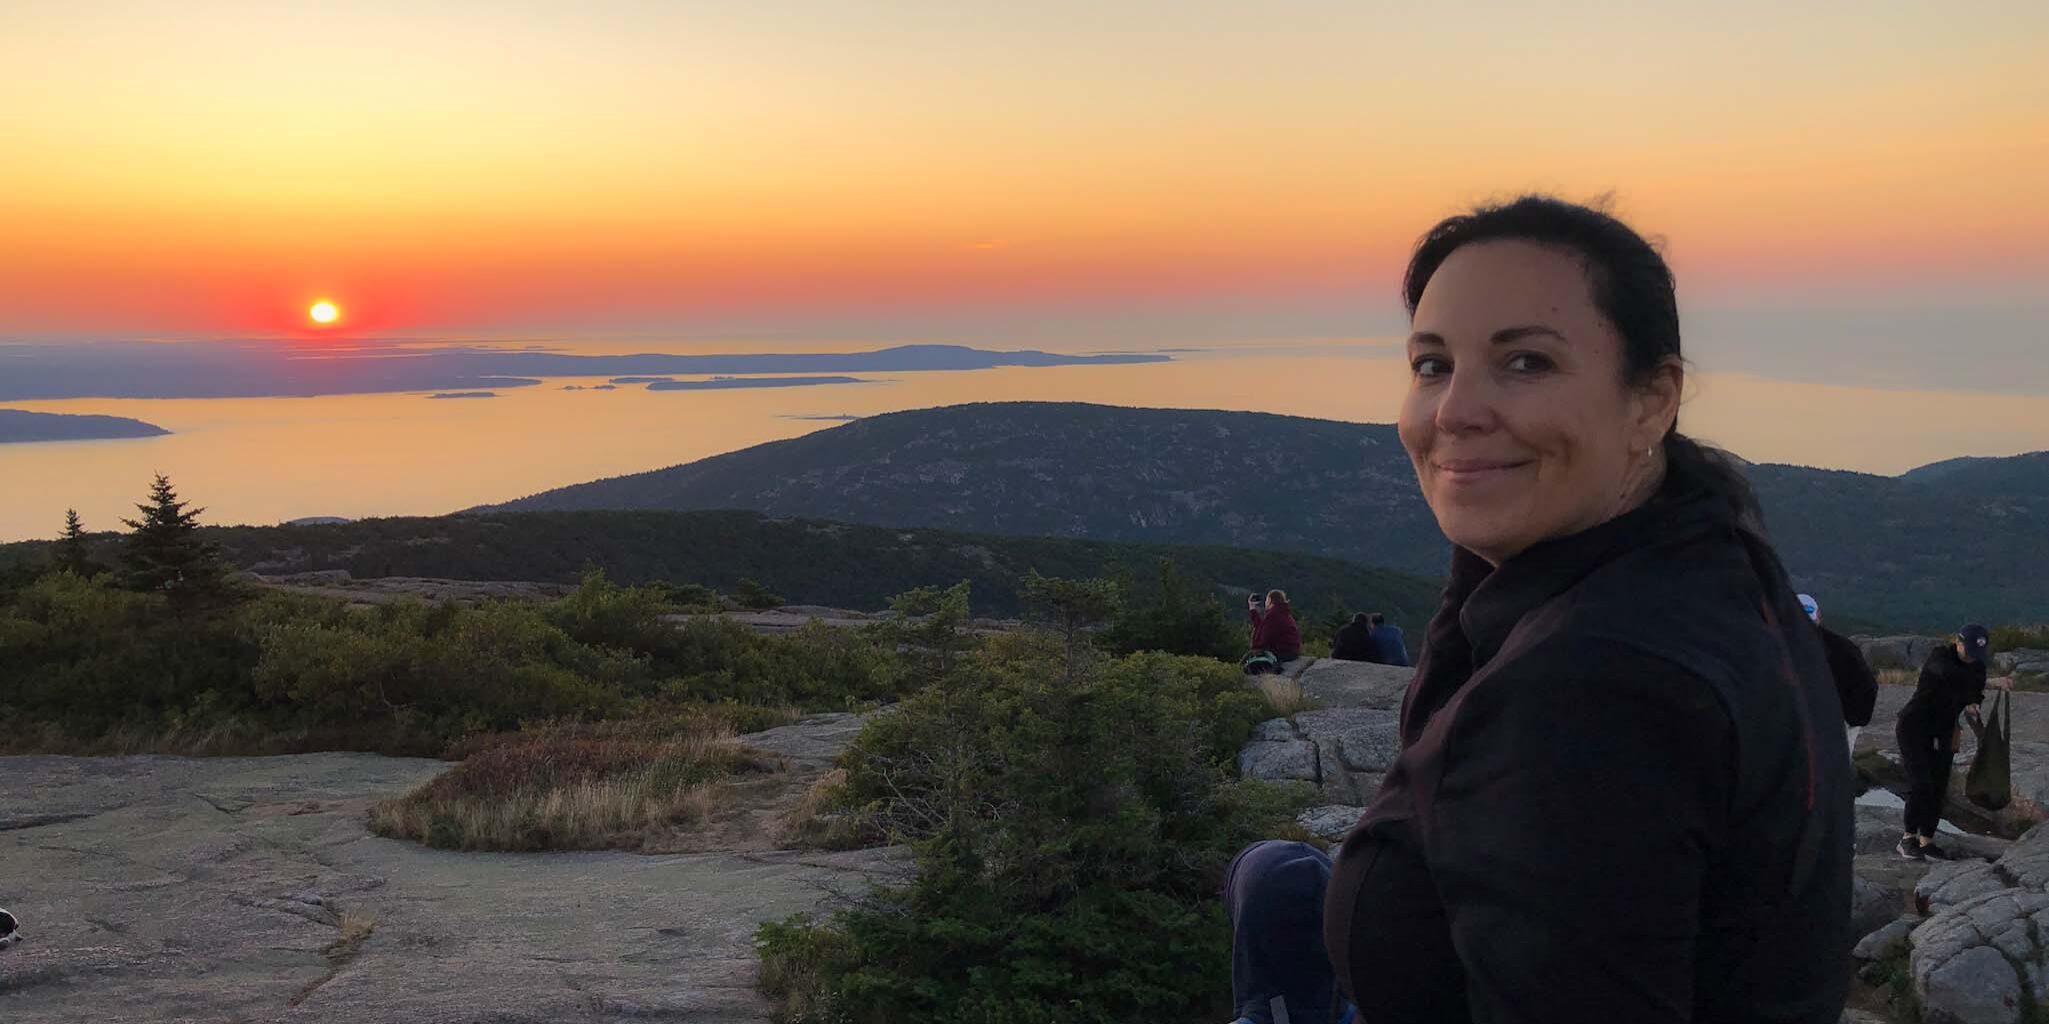 Kathy - VegInspired - woman sitting on mountain overlooking ocean at sunrise